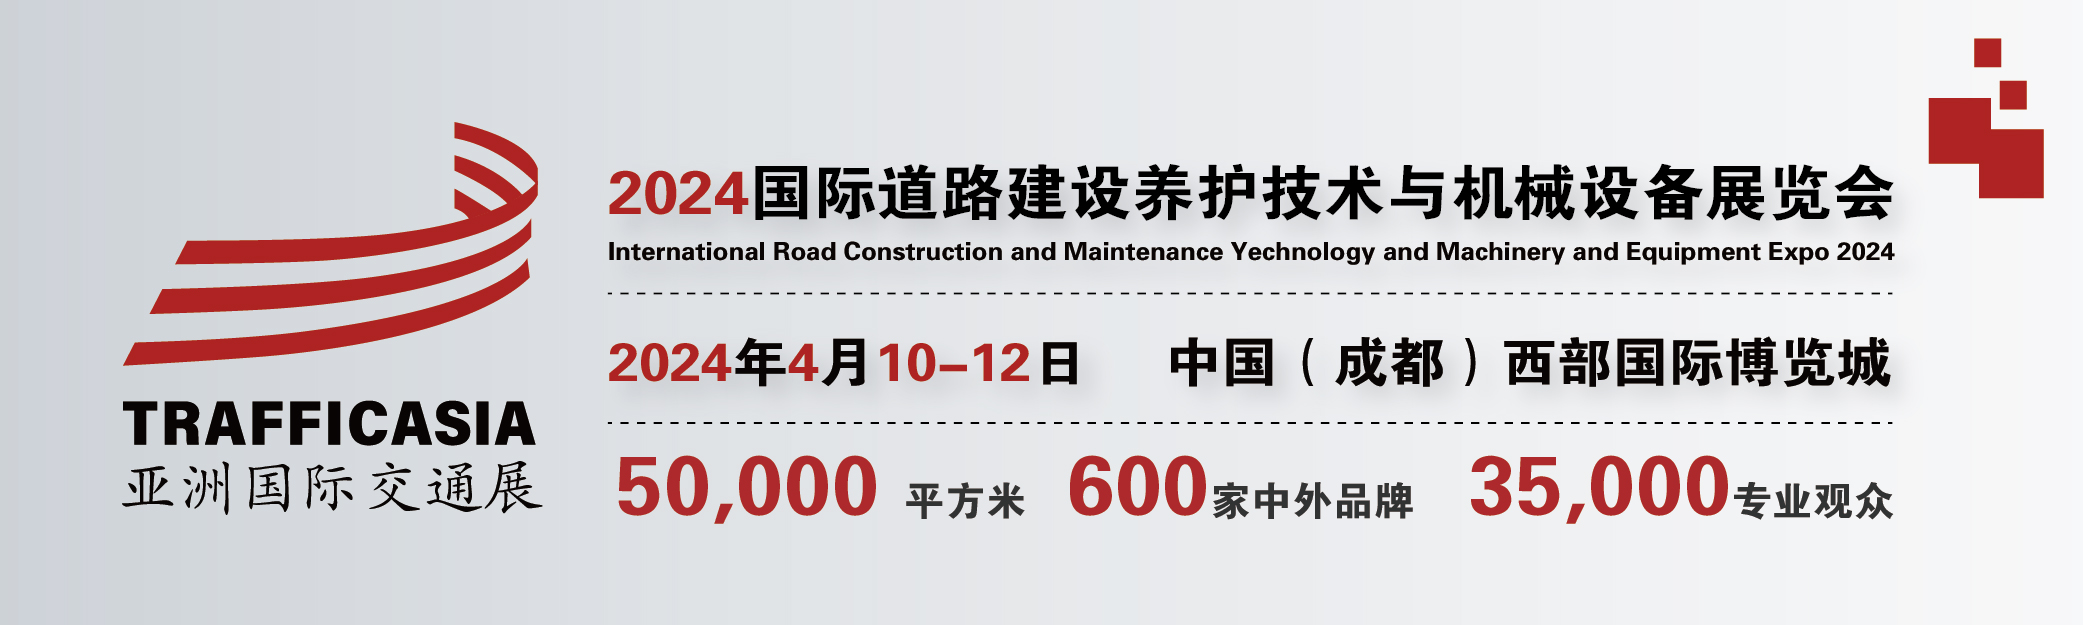 2024中国(成都)国际道路建设养护技术与机械设备展览会